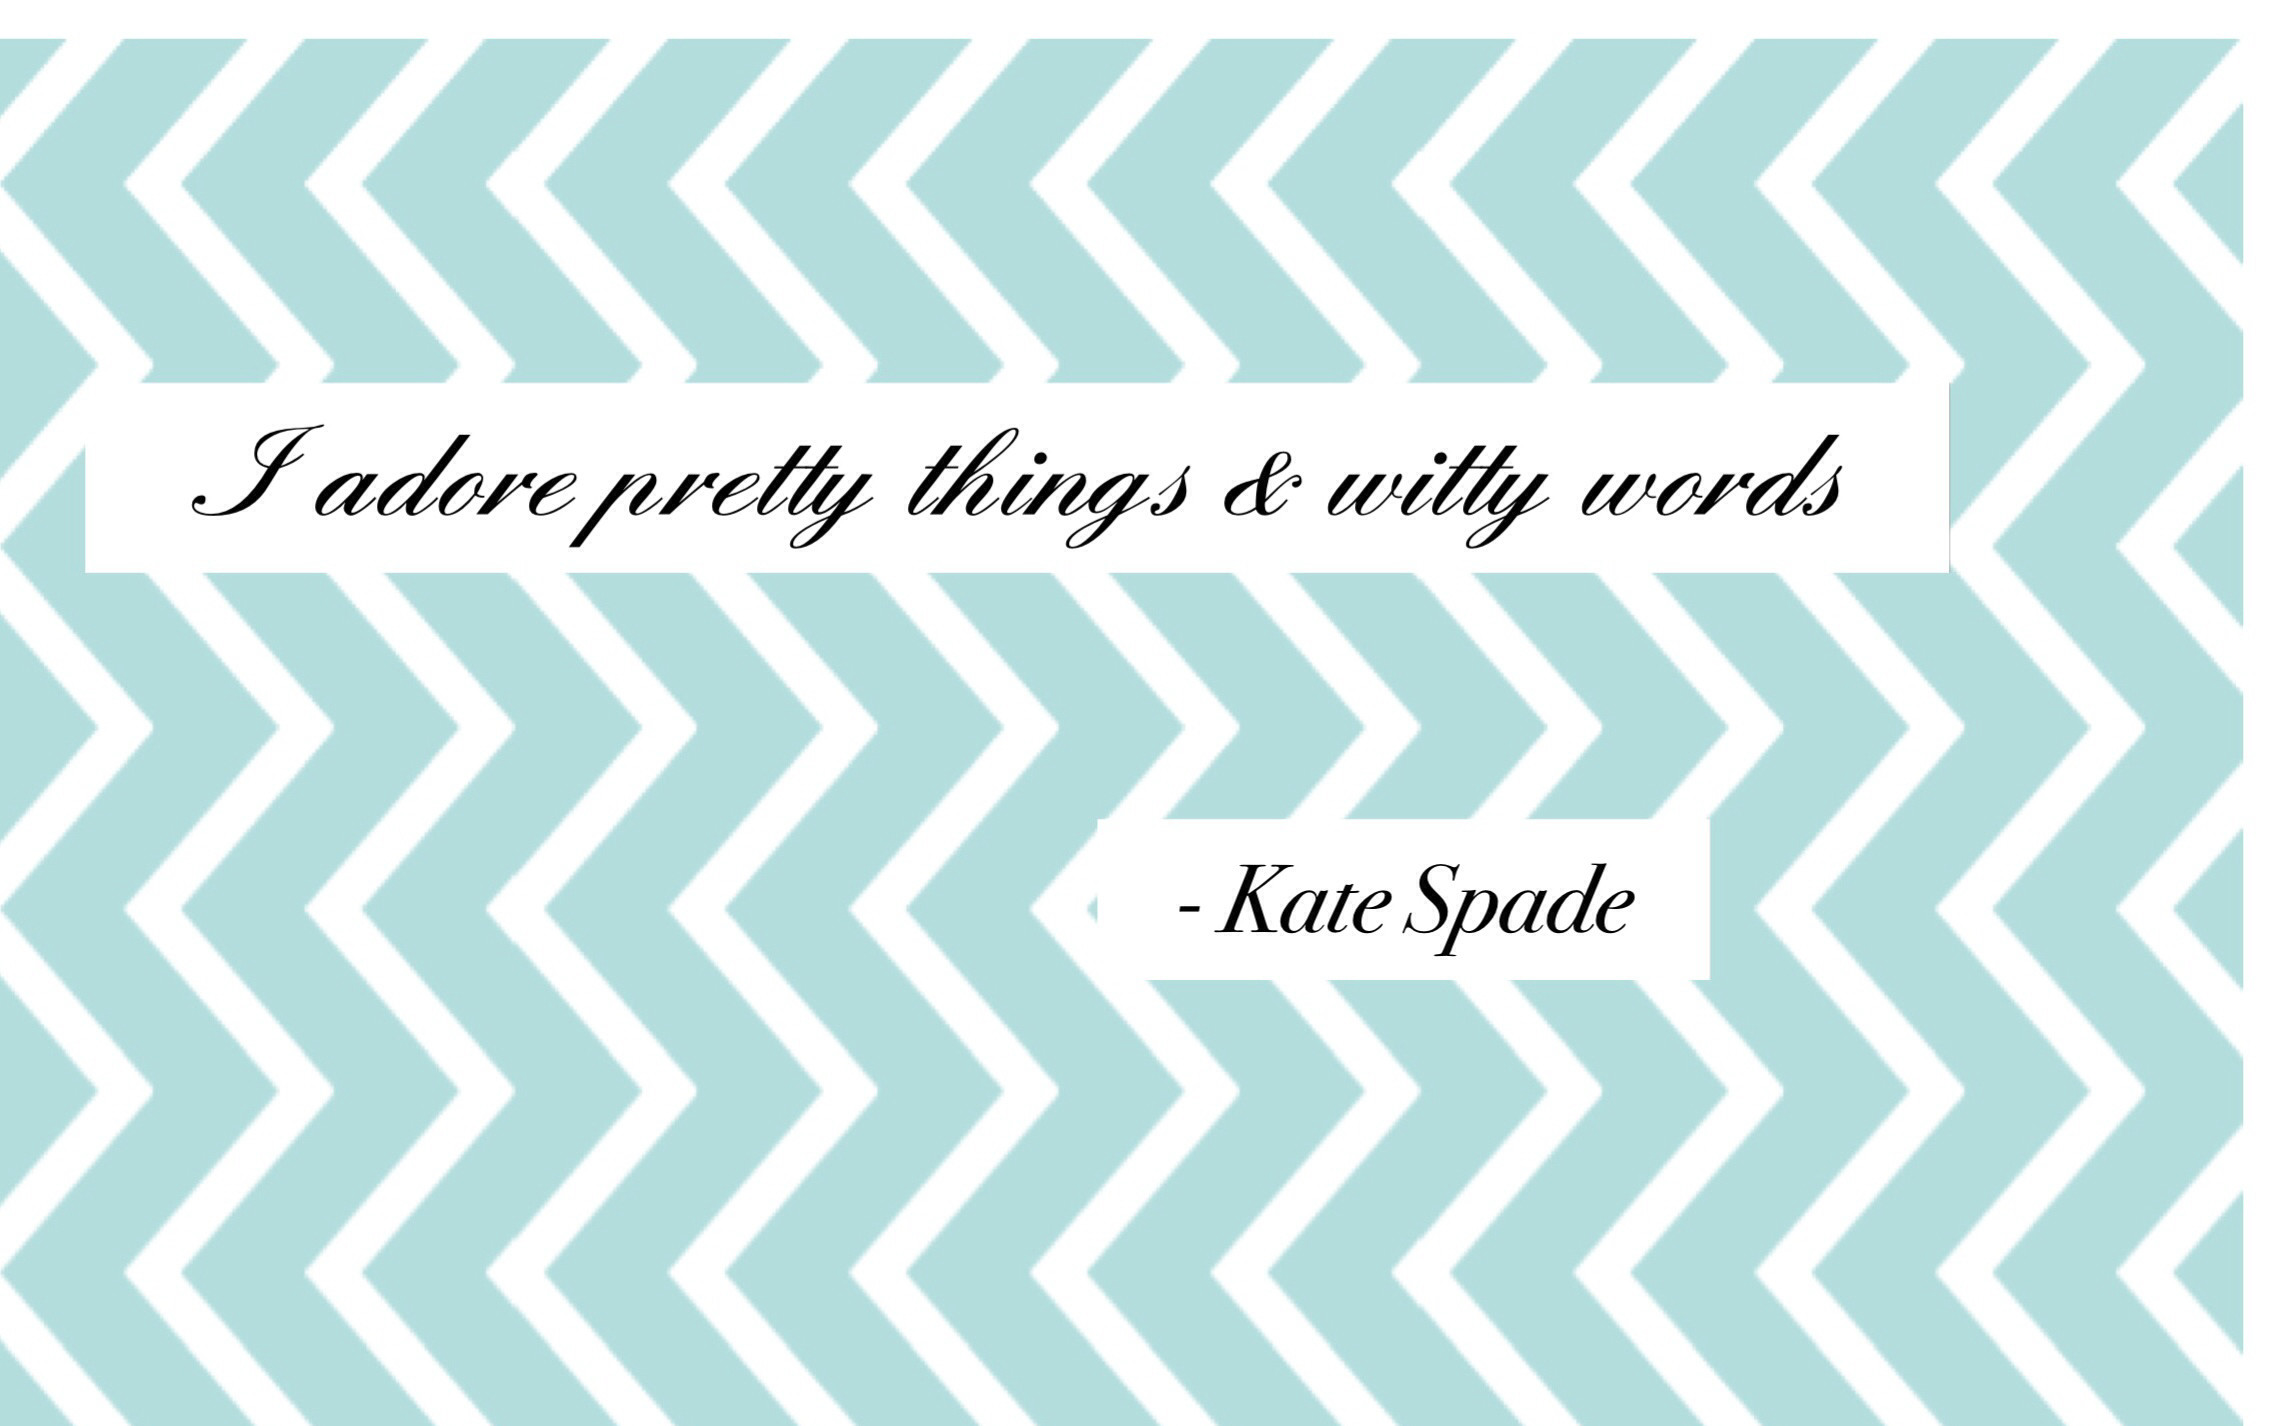 Kate Spade Wallpaper